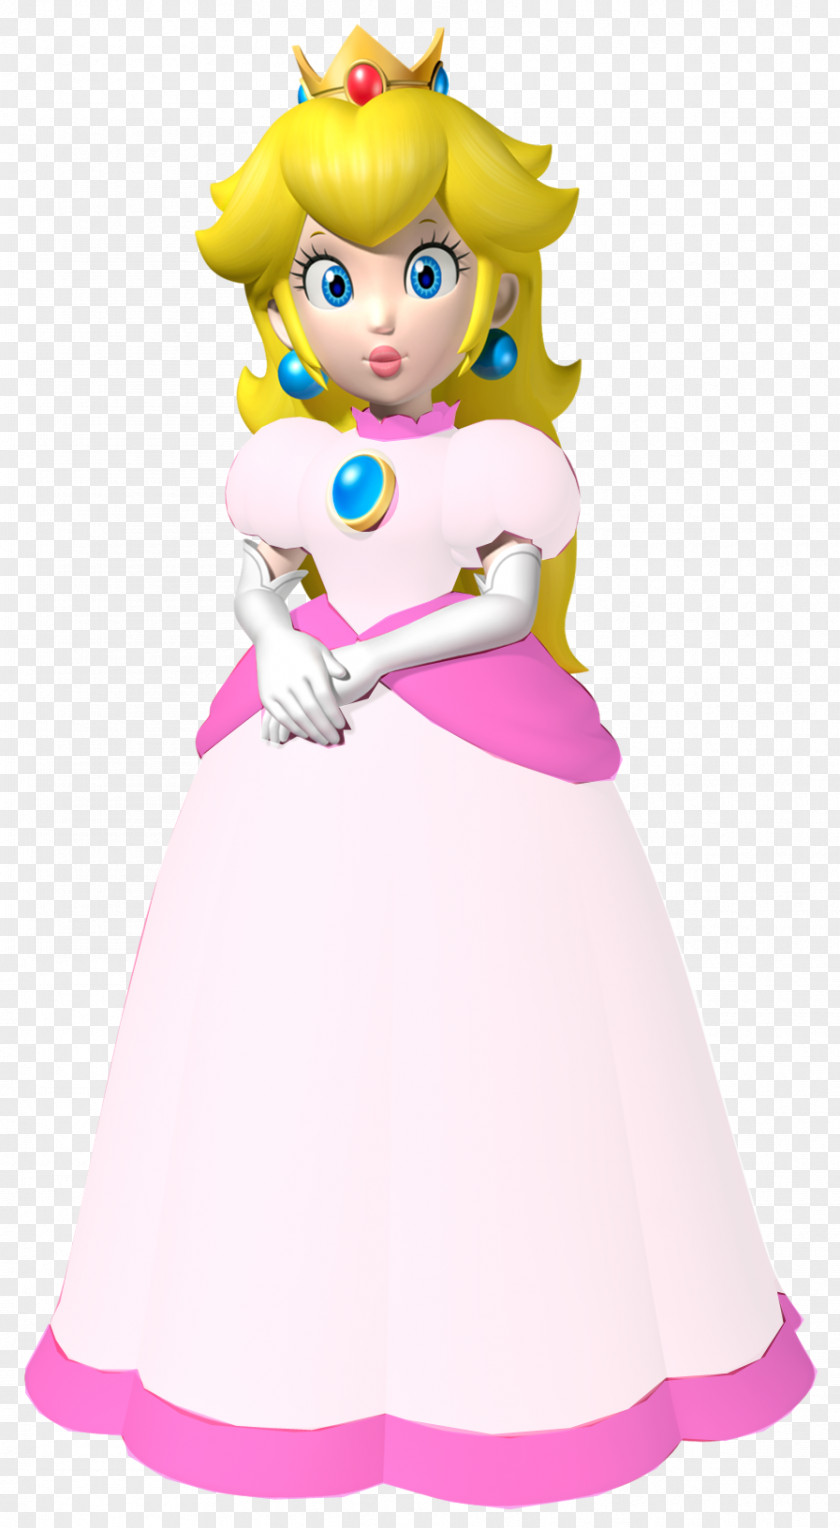 Peach Mario Bros. Princess Bowser Rosalina PNG